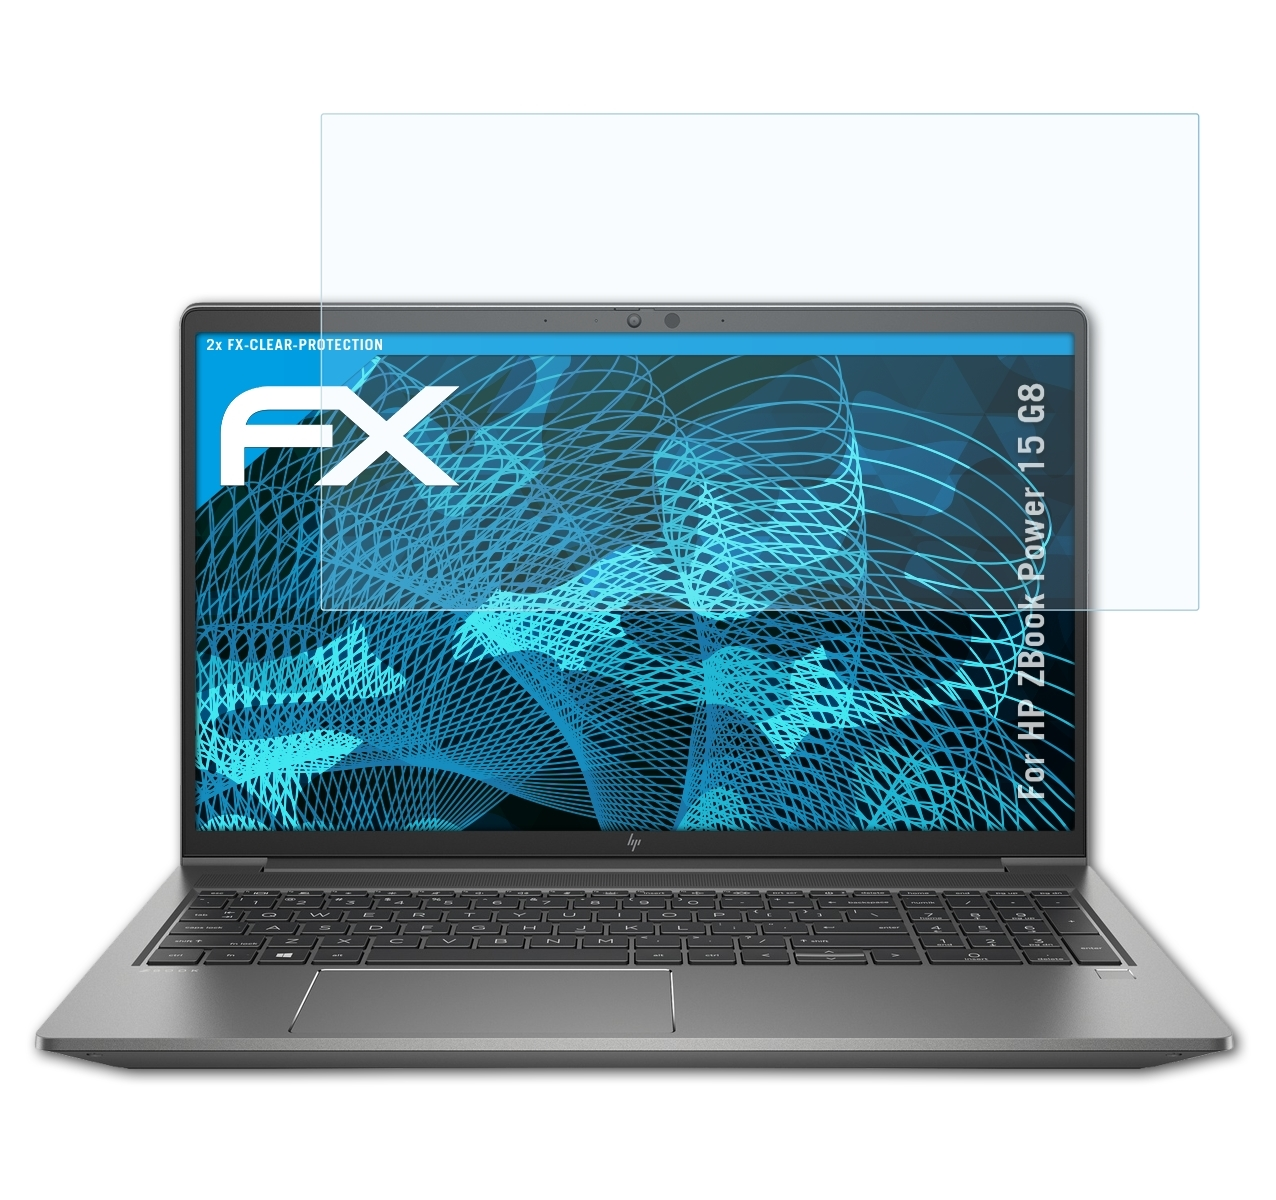 2x ZBook HP Displayschutz(für ATFOLIX FX-Clear 15 G8) Power